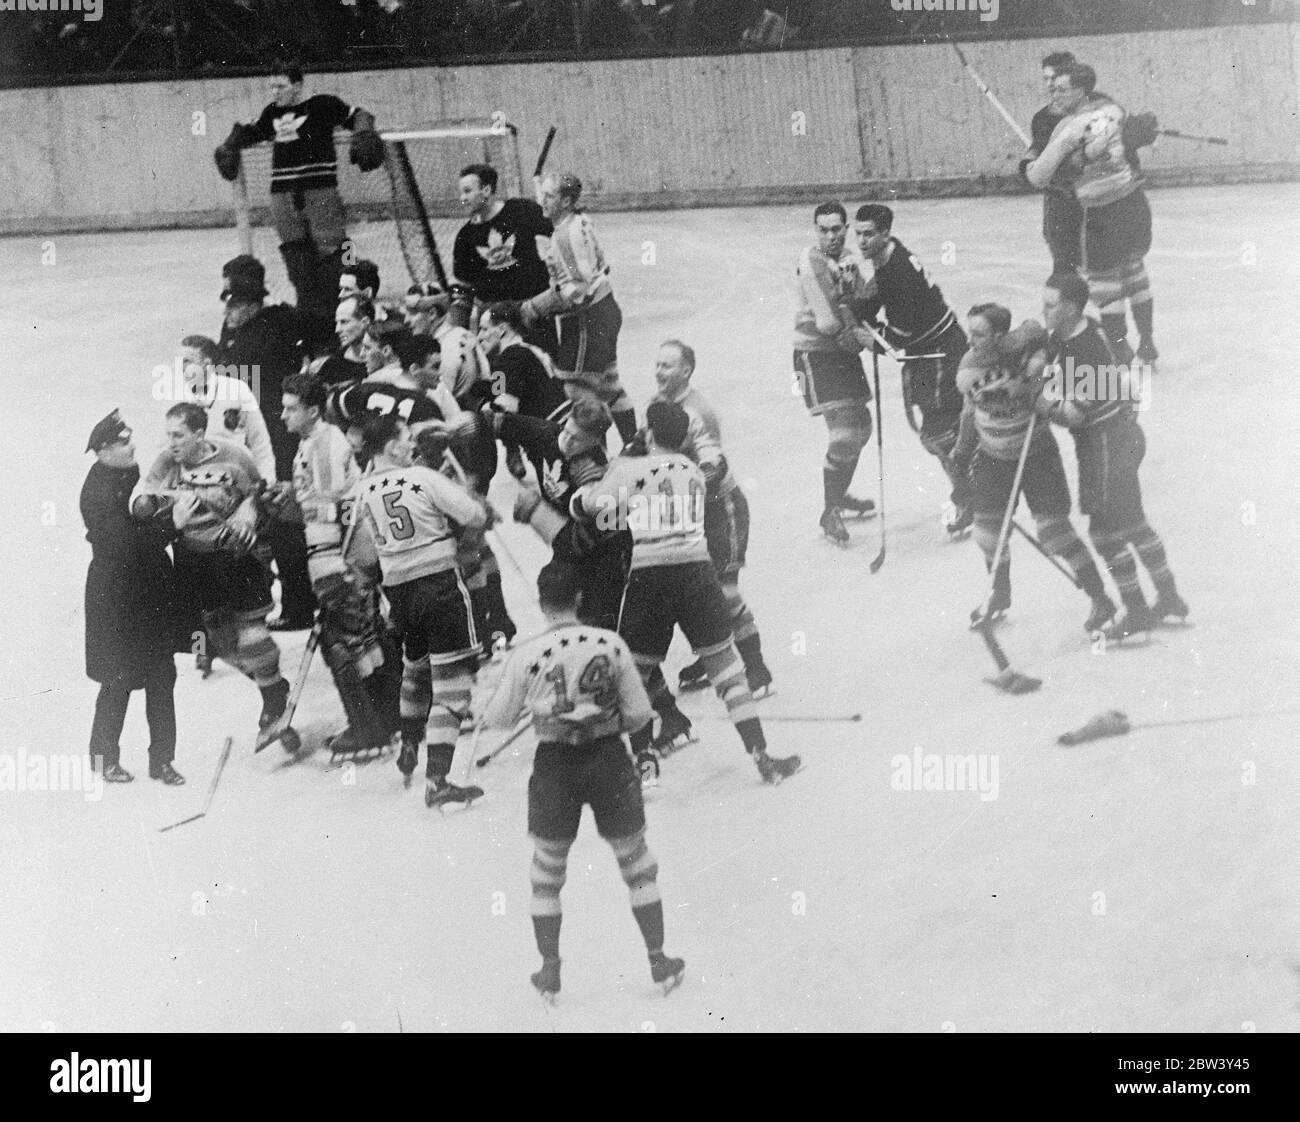 La partita di hockey su ghiaccio di New York termina in lotta libera , intervento della polizia . Una lotta libera , in cui una squadra di polizia fu costretta ad intervenire per ristabilire l'ordine , segnò la partita di hockey su ghiaccio tra le Americhe di New York e i Toronto Maple Leafs al Madison Square Gardens , New York . Gli americani hanno sconfitto i Maple Leafs 3 - 1 . Foto spettacoli , la lotta tra le due squadre sul ghiaccio a Madison Square Gardens . Jenkins (10 ) degli Americani sta tenendo uno dei giocatori di Toronto mentre colpisce agli EMMS (15 ), anche degli Americani. La sinistra è Schriner ( Americani ) che è detenuto da un poliziotto . 9 Mar Foto Stock